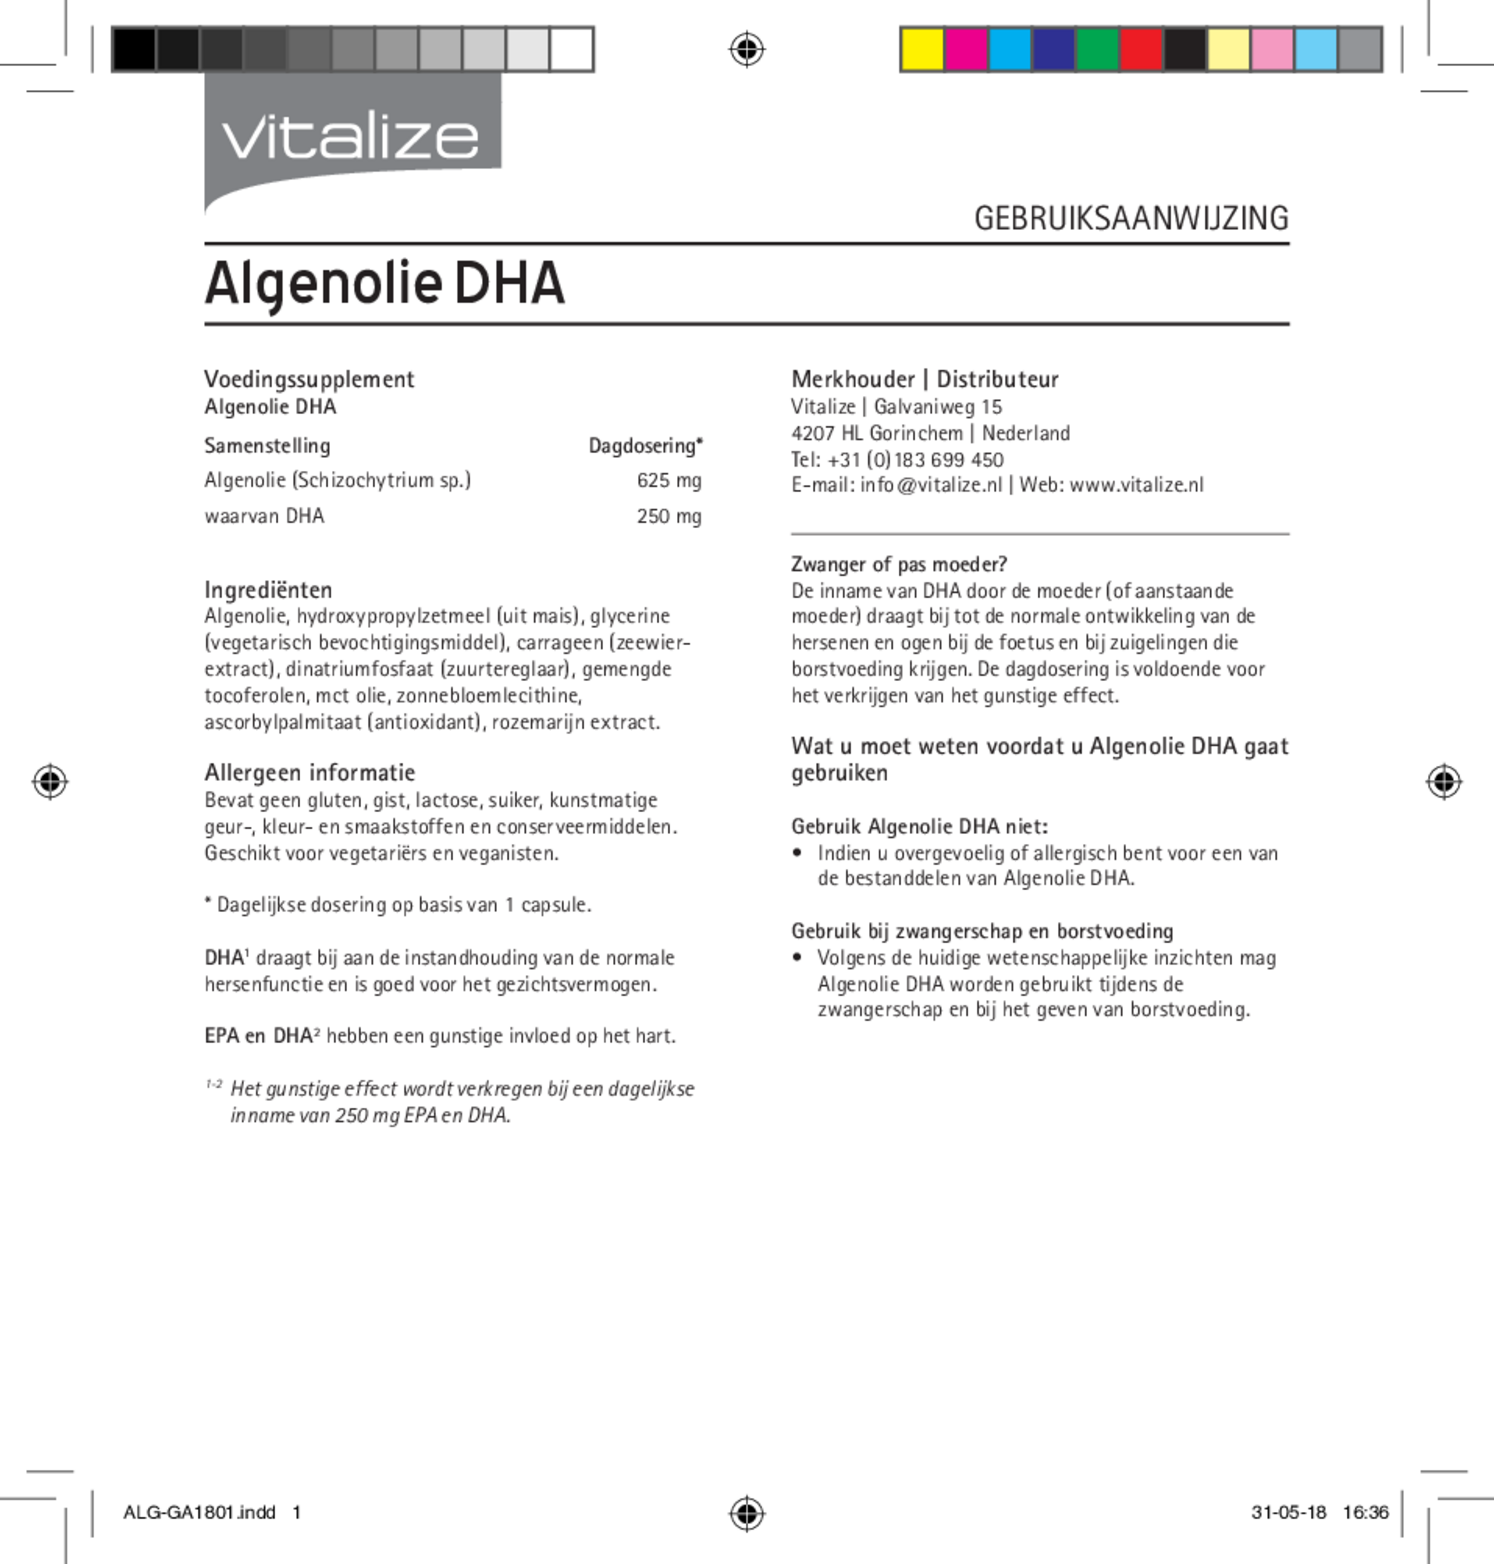 Vegan Omega 3 Algenolie DHA Capsules afbeelding van document #1, gebruiksaanwijzing